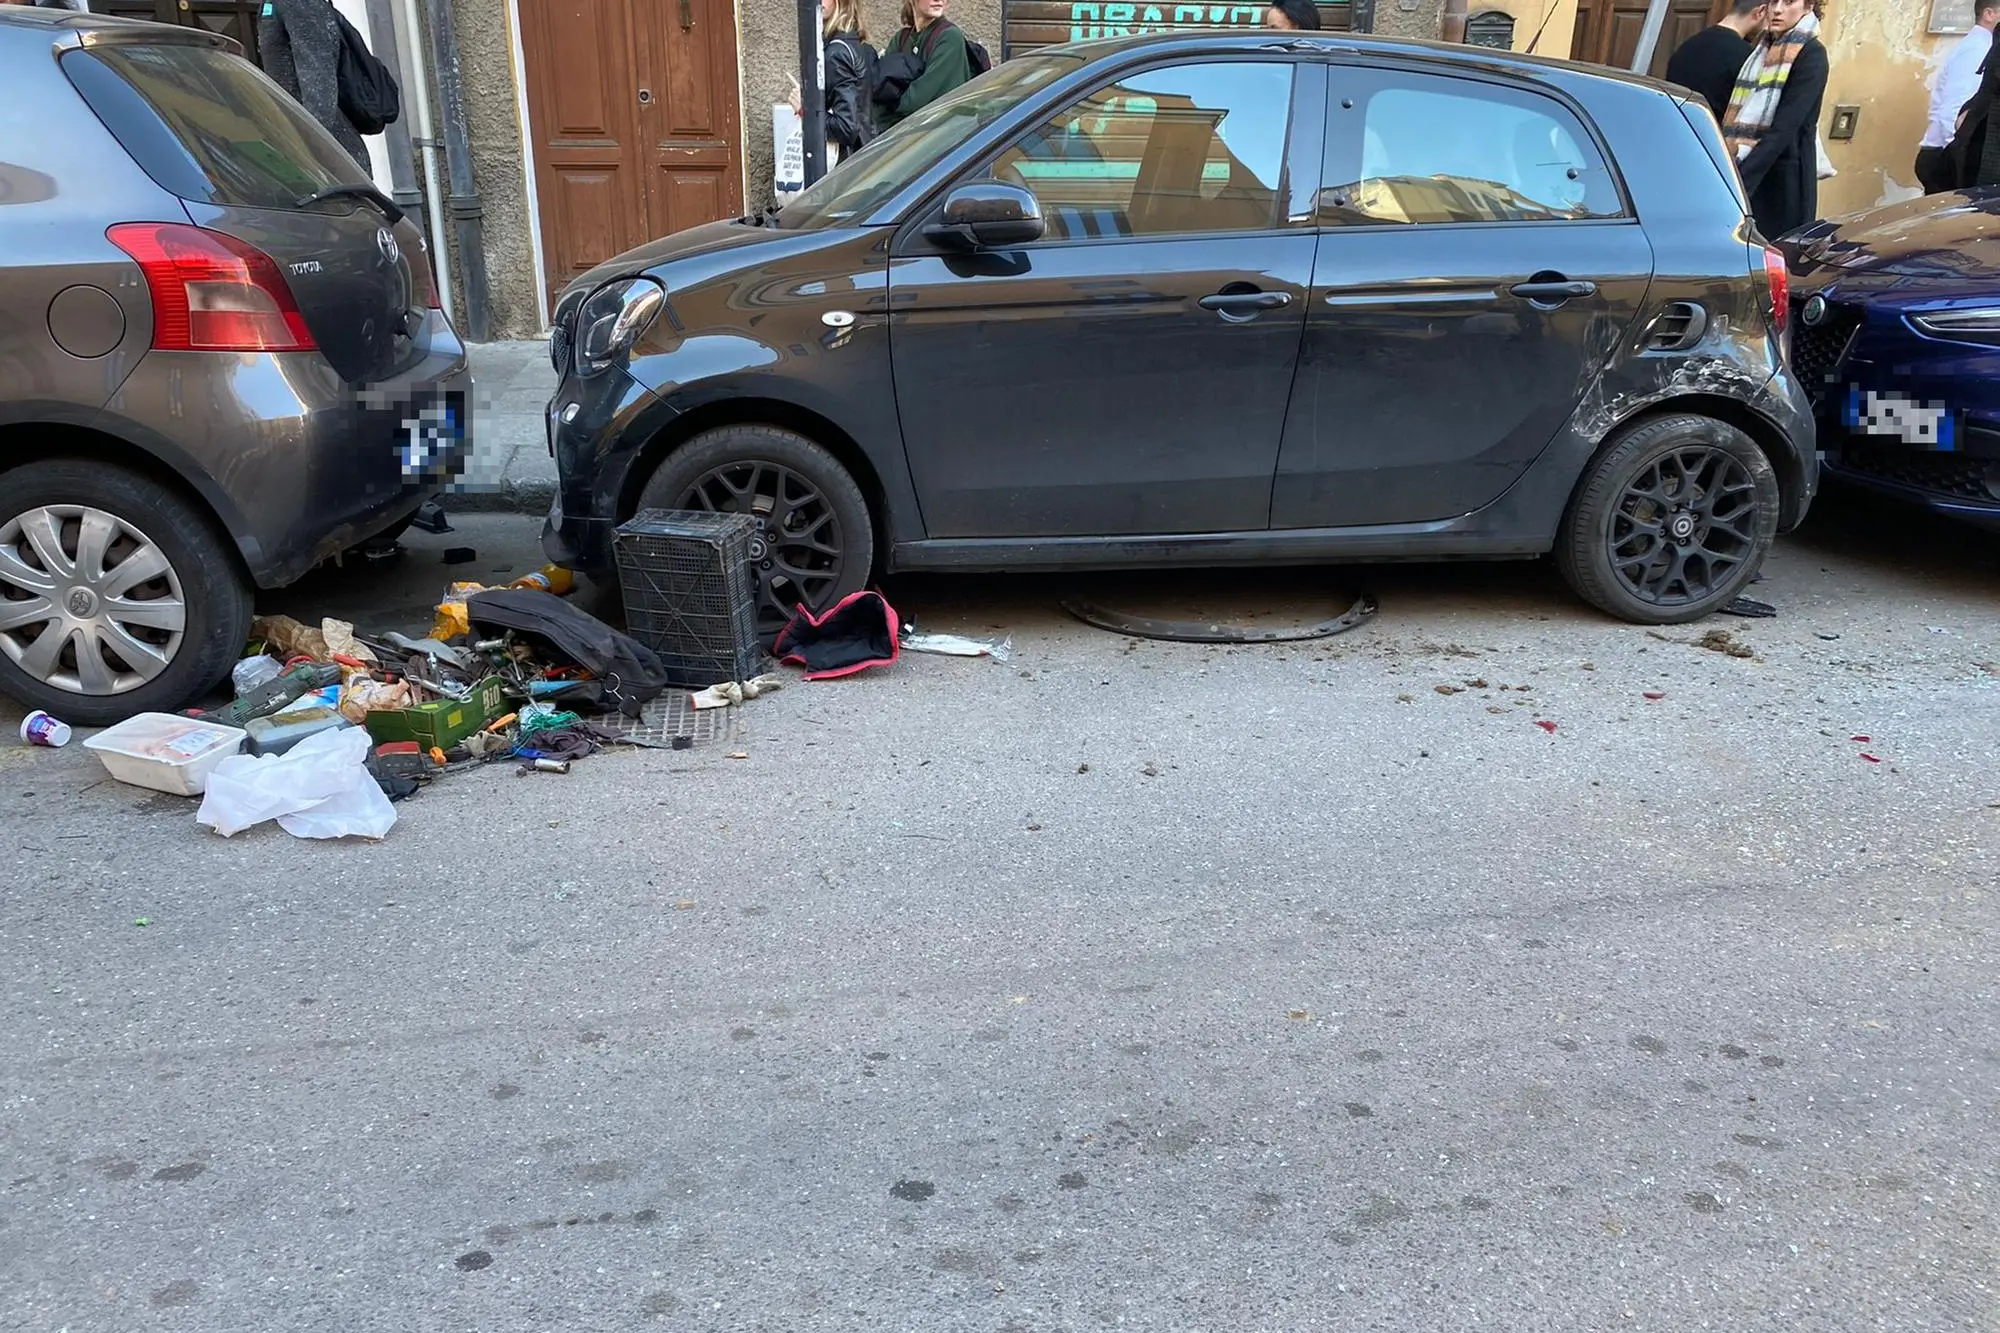 Una delle auto danneggiate dal furgone durante la fuga nelle strade del centro a Cagliari